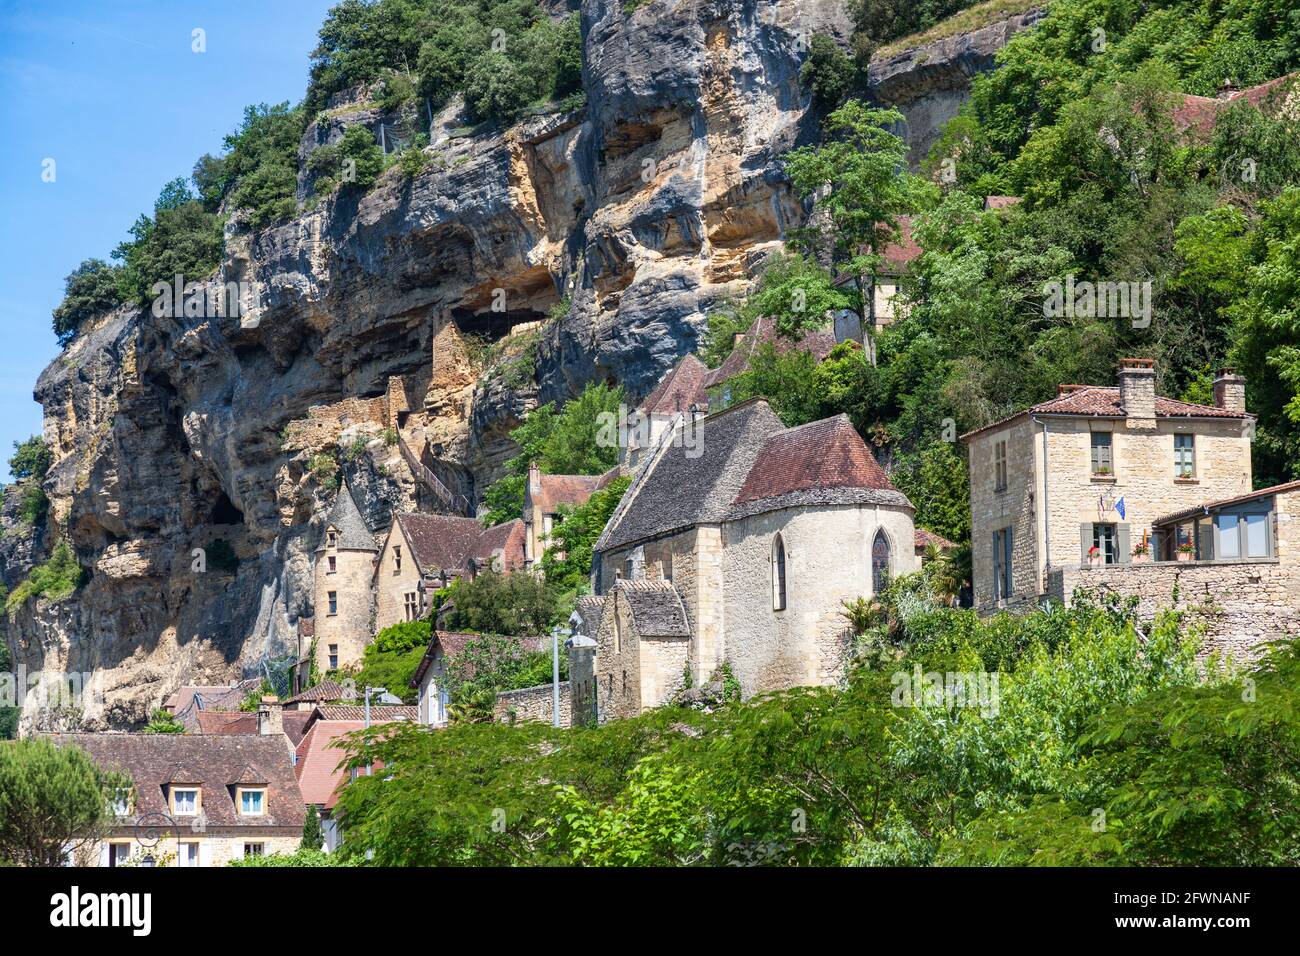 Il villaggio di la Roque-Gageac, classificato tra i più bei villaggi di Francia, è situato tra le scogliere e la Dordogna. Foto Stock